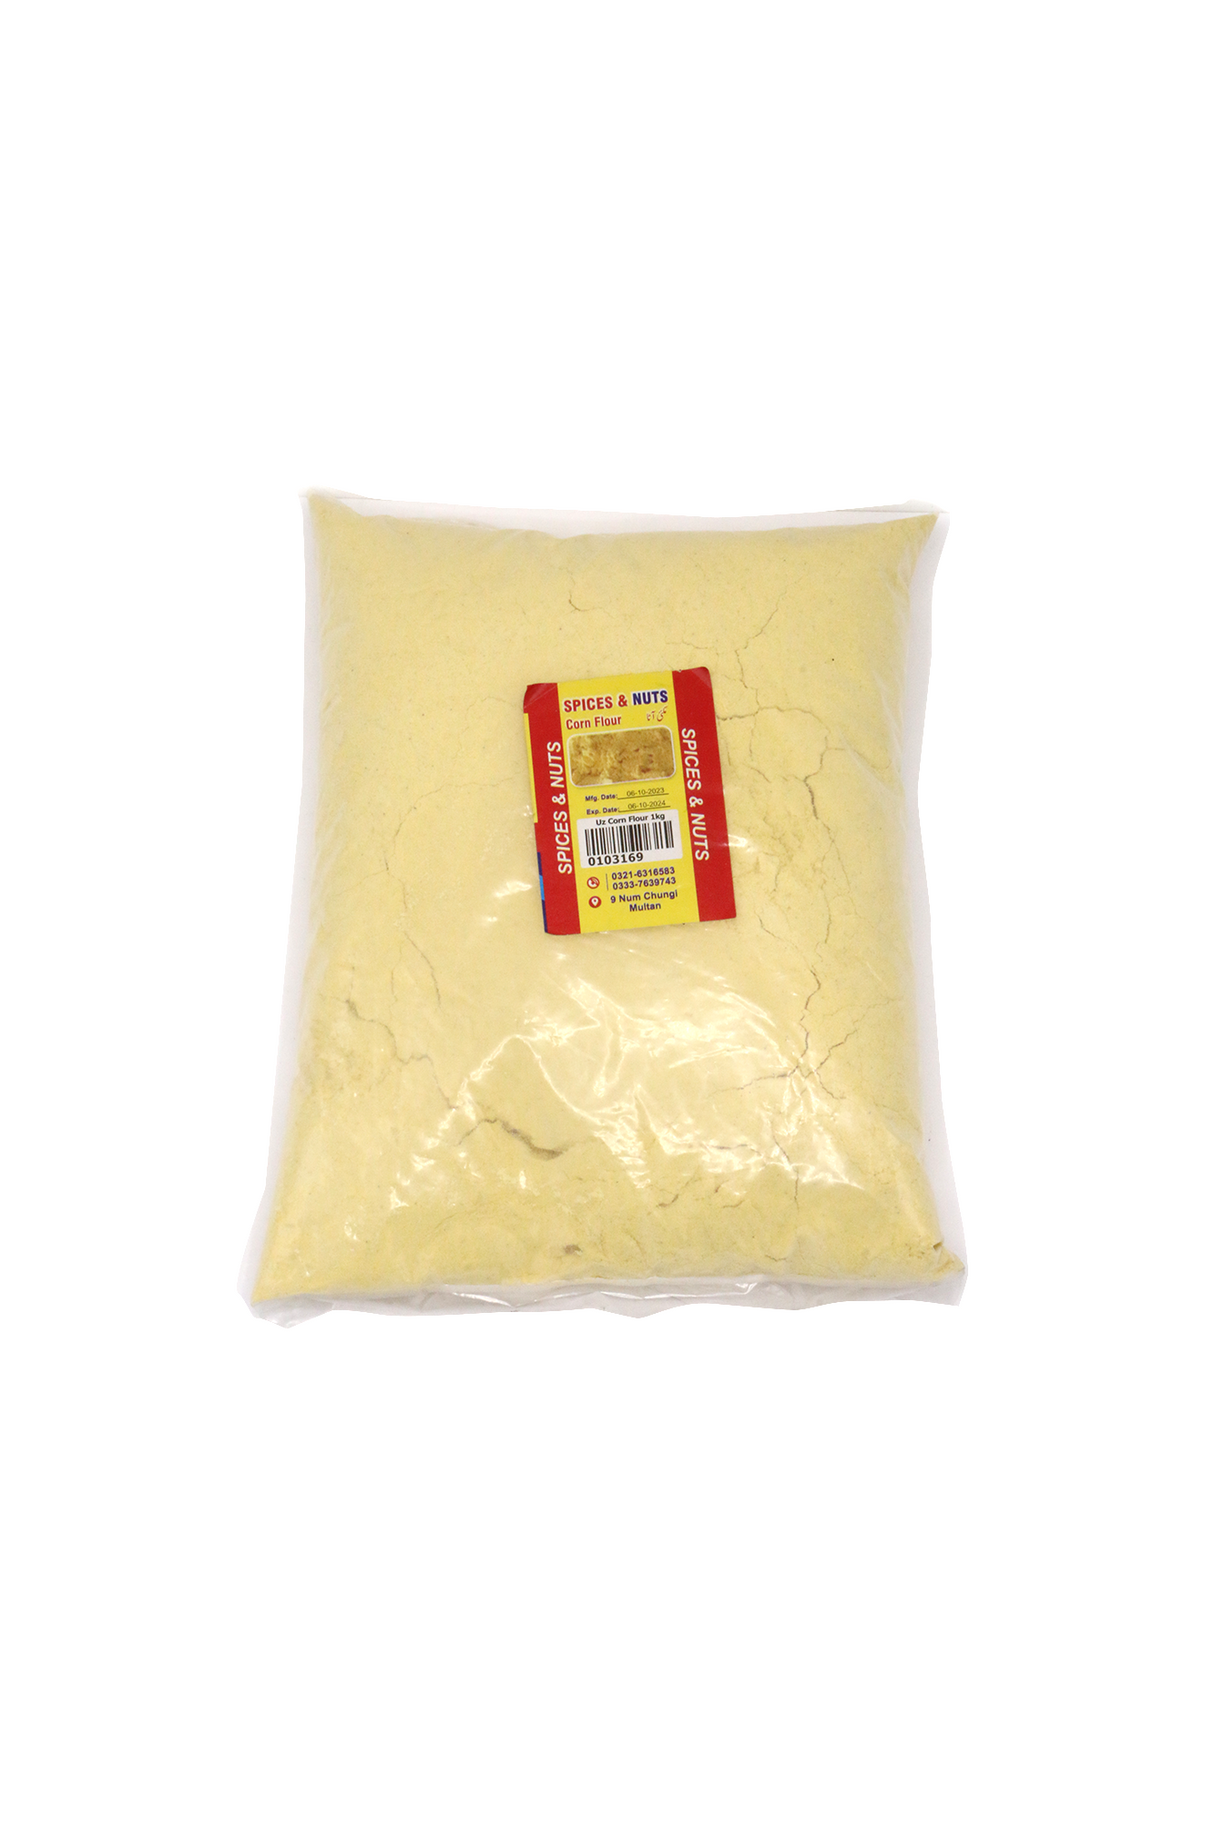 hello bizz corn flour 1kg